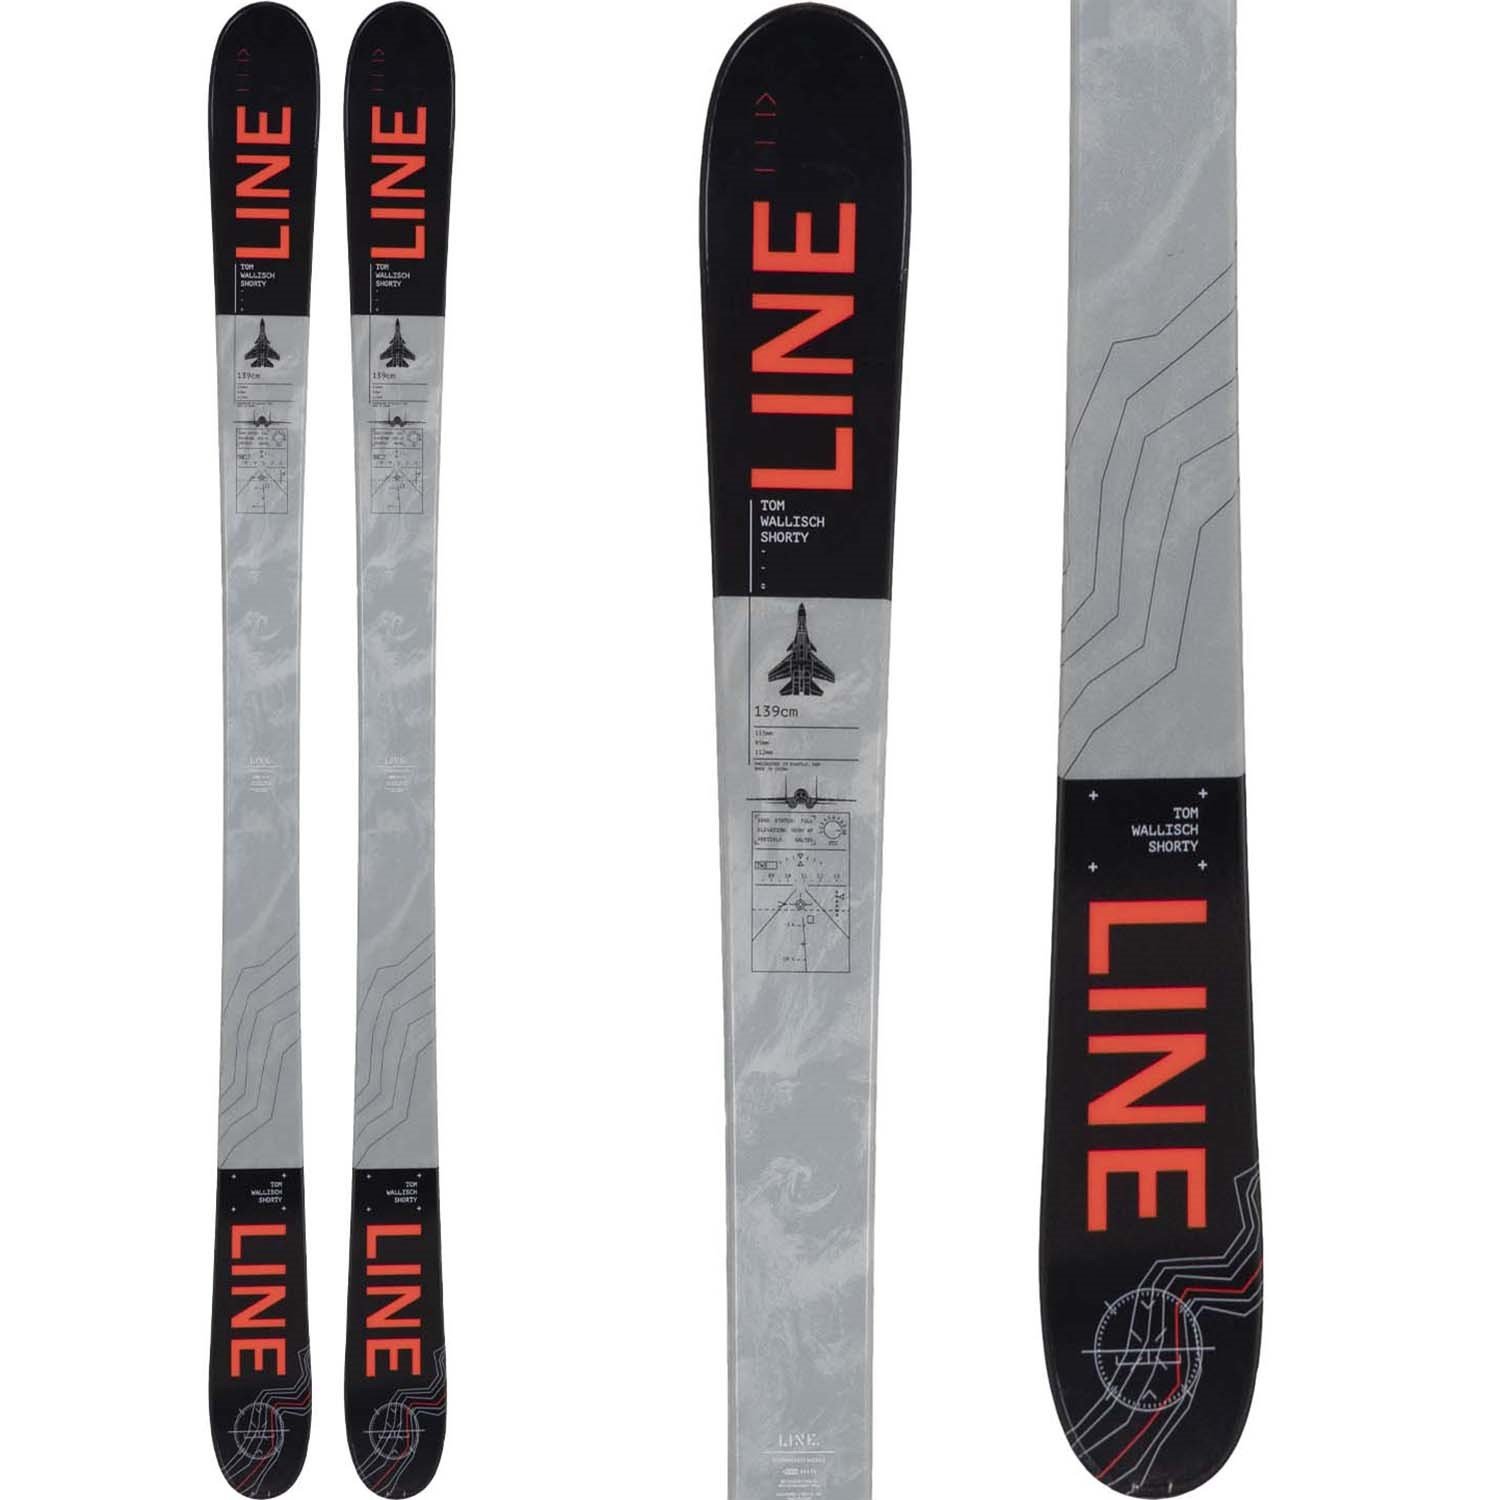 Line Skis Tom Wallisch Shorty Skis - Boys' 2020 | evo